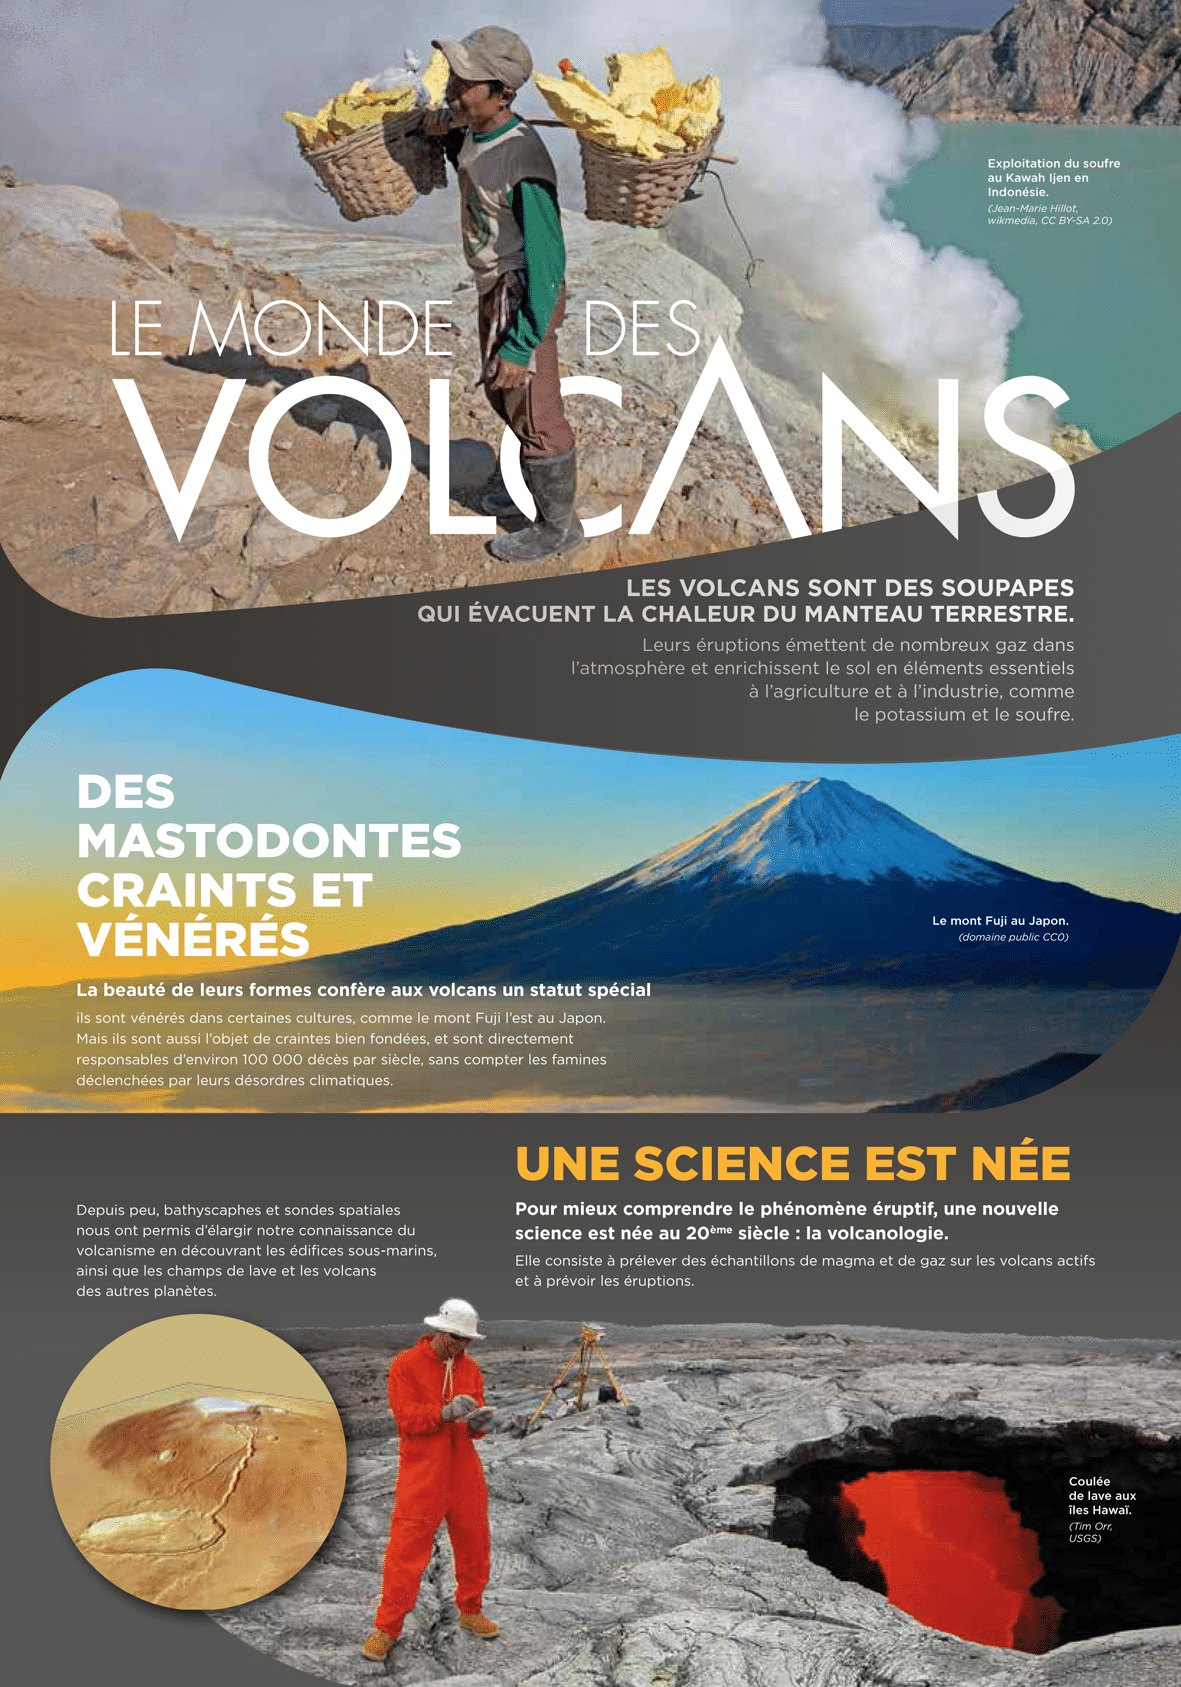 Le Monde des volcans